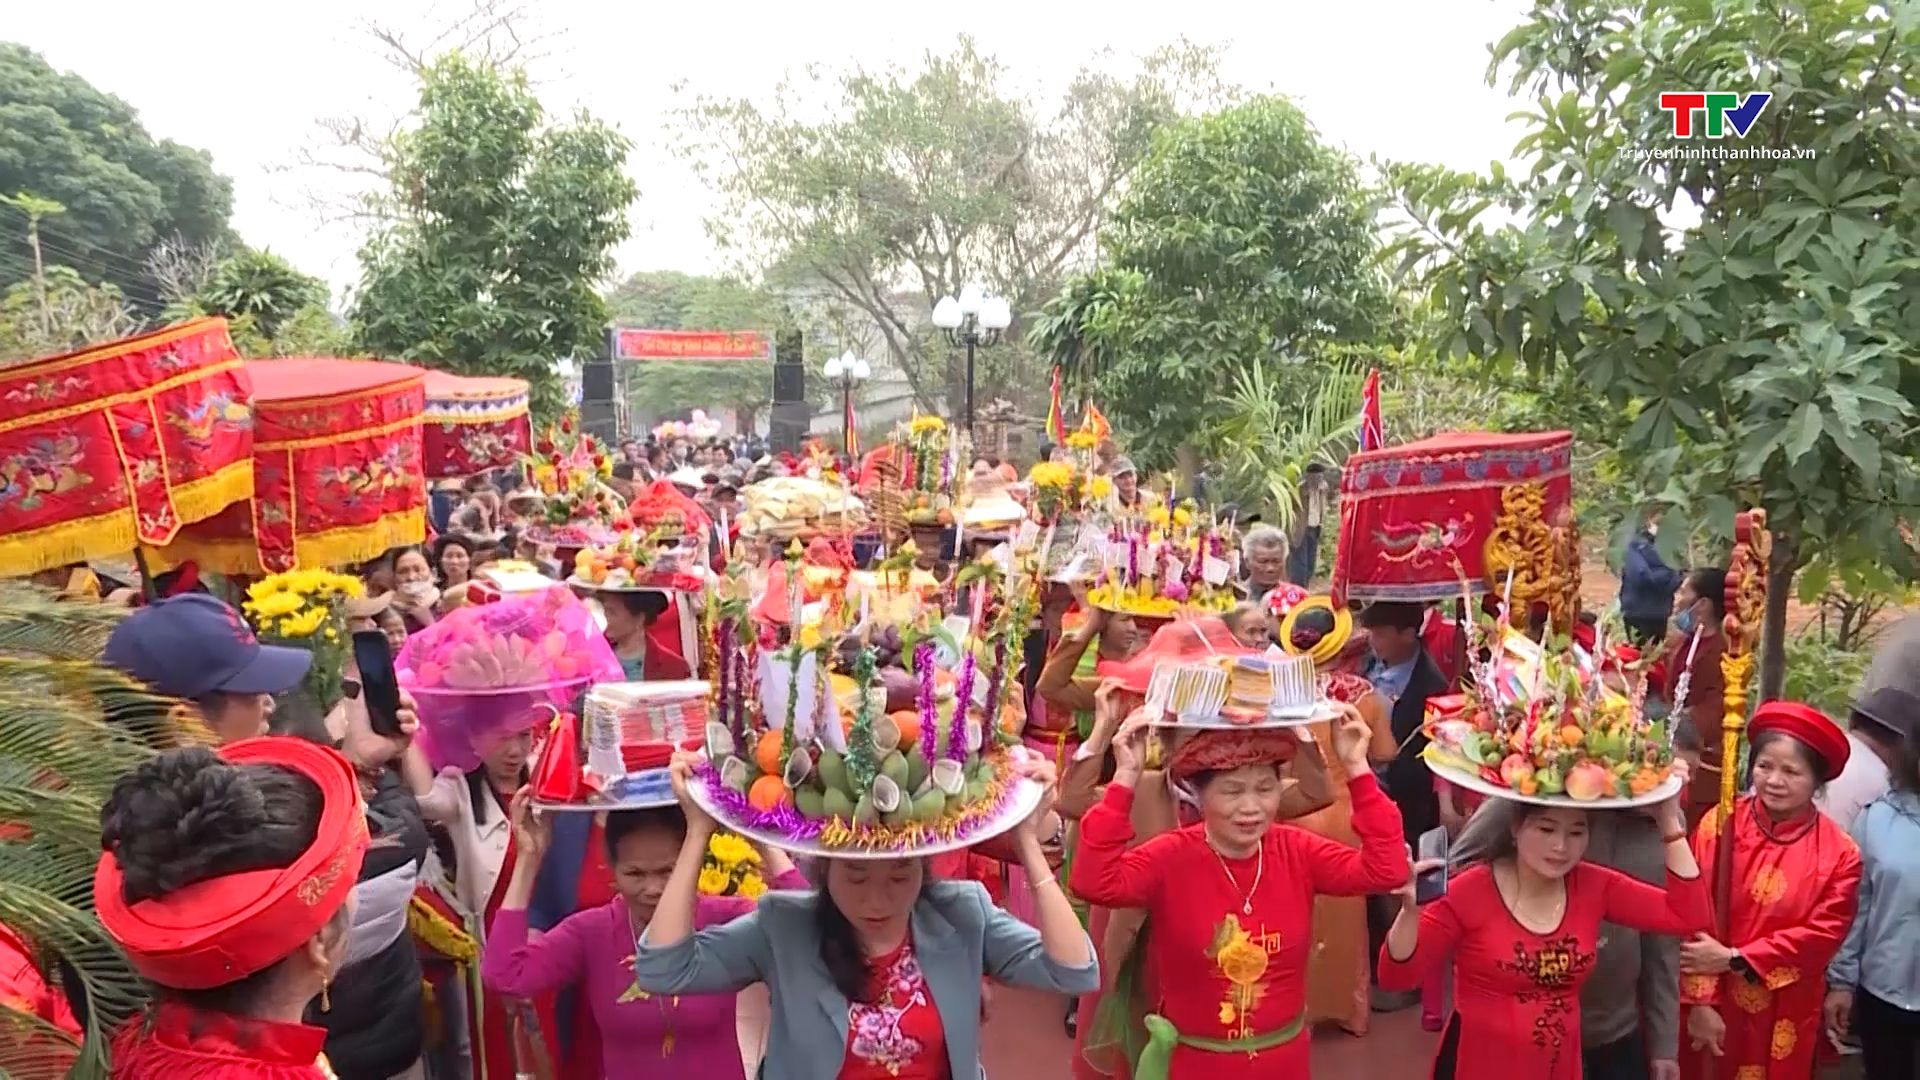 Sôi nổi lễ hội Đình Cơm Thi ở xã Hà Thanh, huyện Hà Trung dịp đầu xuân- Ảnh 1.